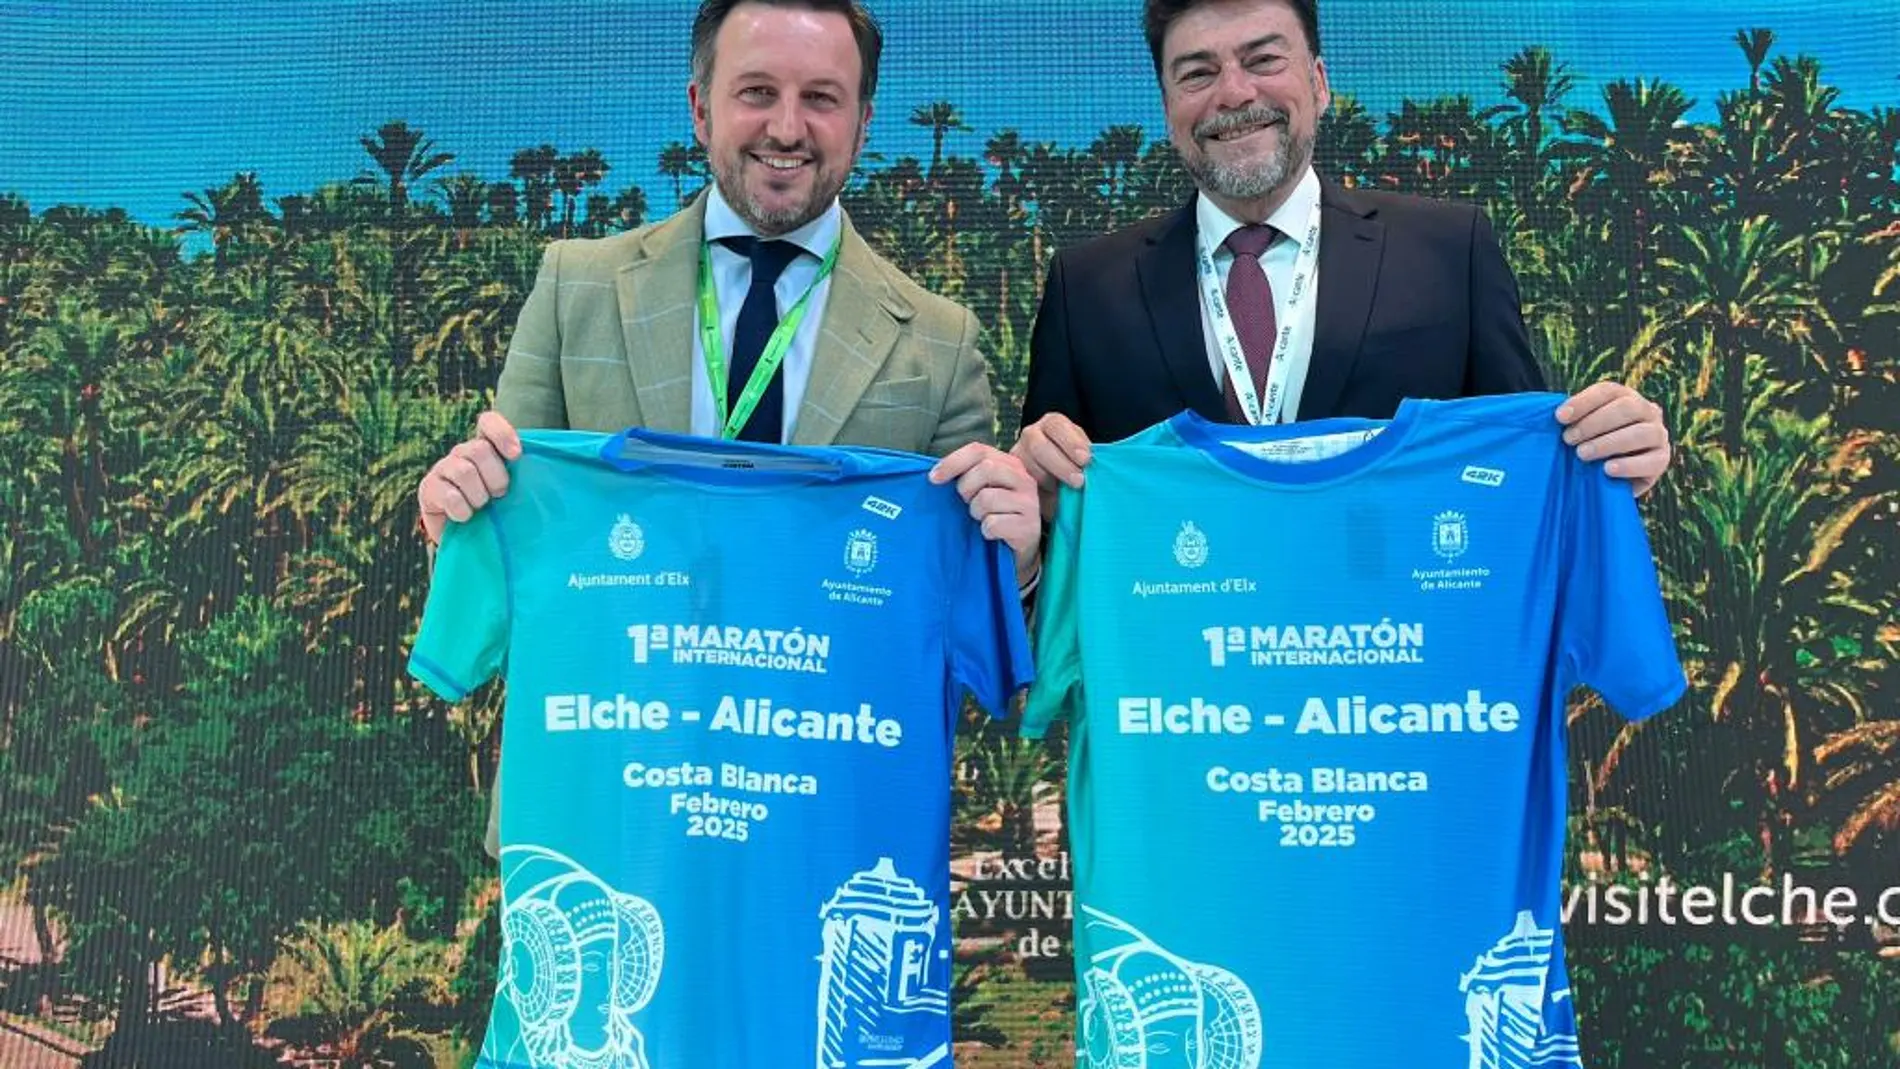 El alcalde de Elche, Pablo Ruz, y el de Alicante, Luis Barcala, anunciando en la feria de Fitur el maratón entre las dos ciudades.